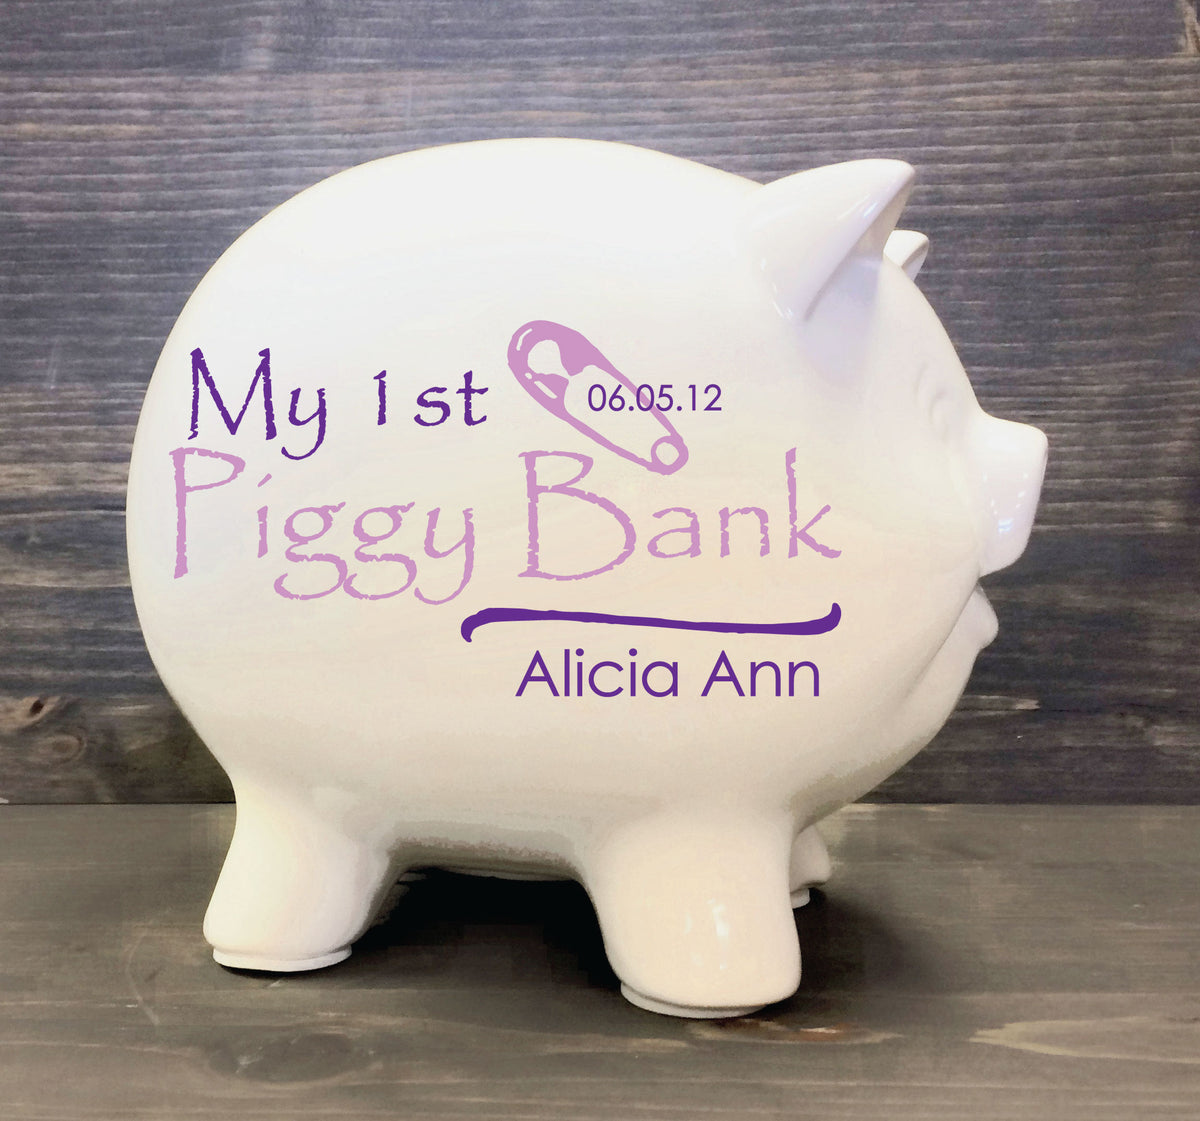 1st piggy bank